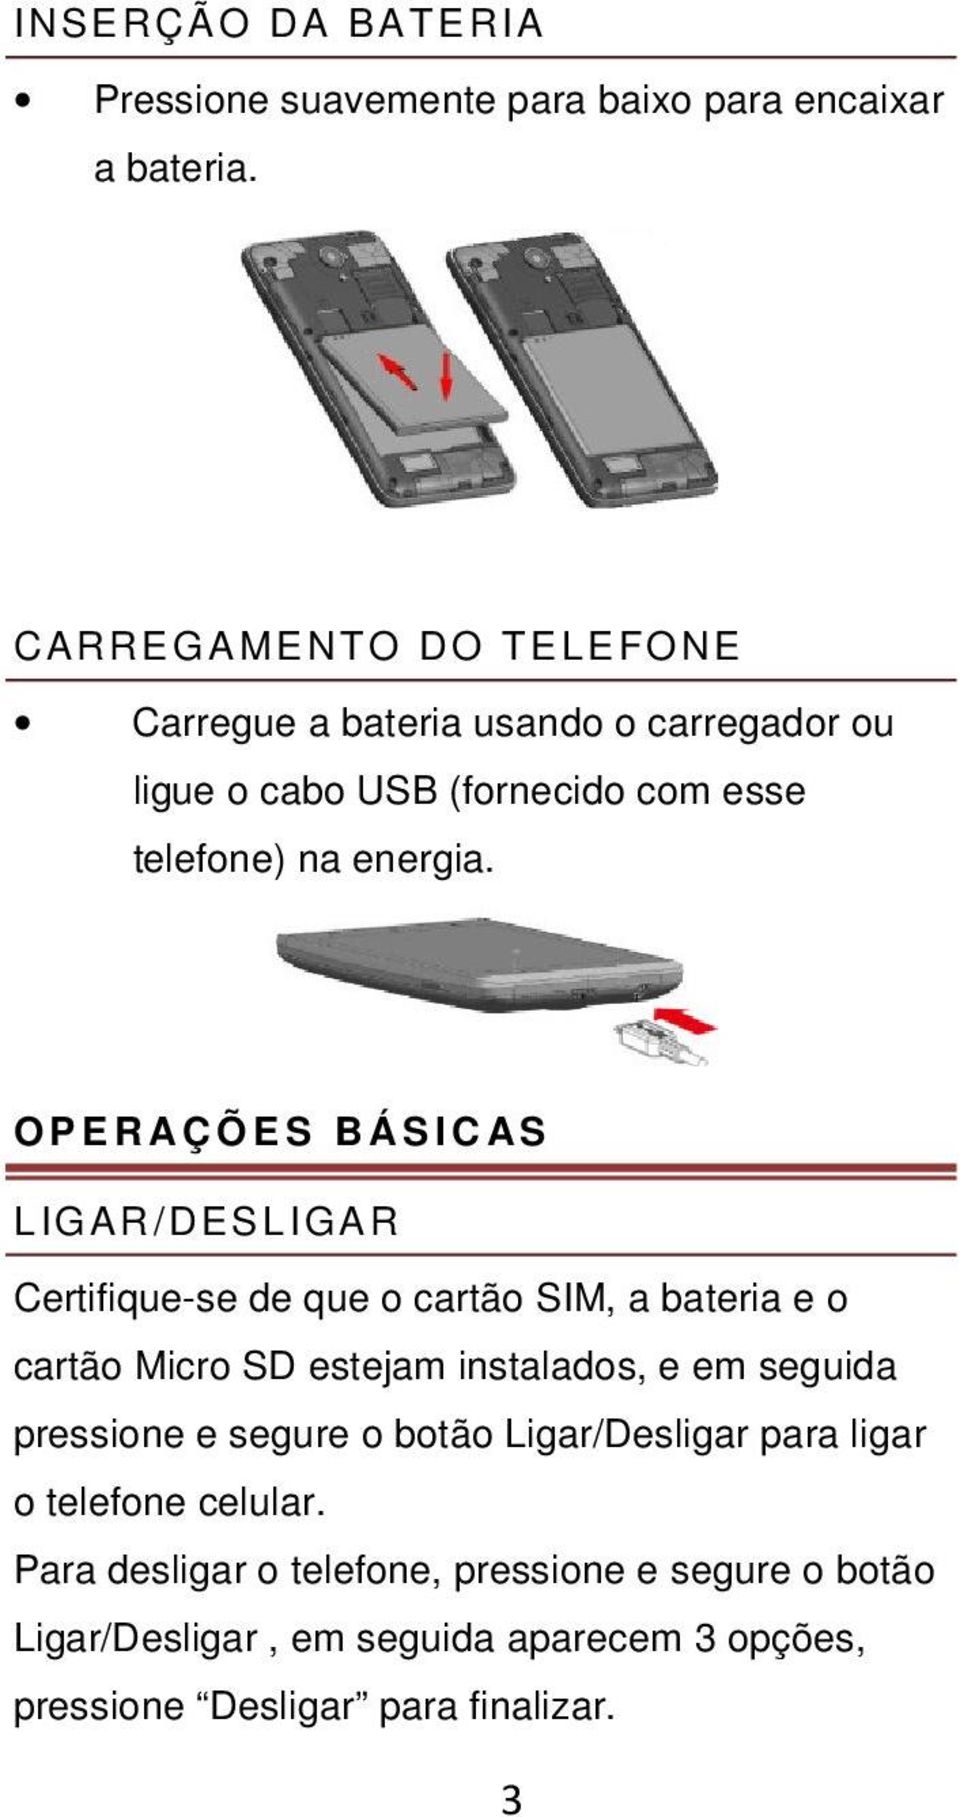 OPE R A Ç Õ E S B Á S I C AS LIGAR/DESLIGAR Certifique-se de que o cartão SIM, a bateria e o cartão Micro SD estejam instalados, e em